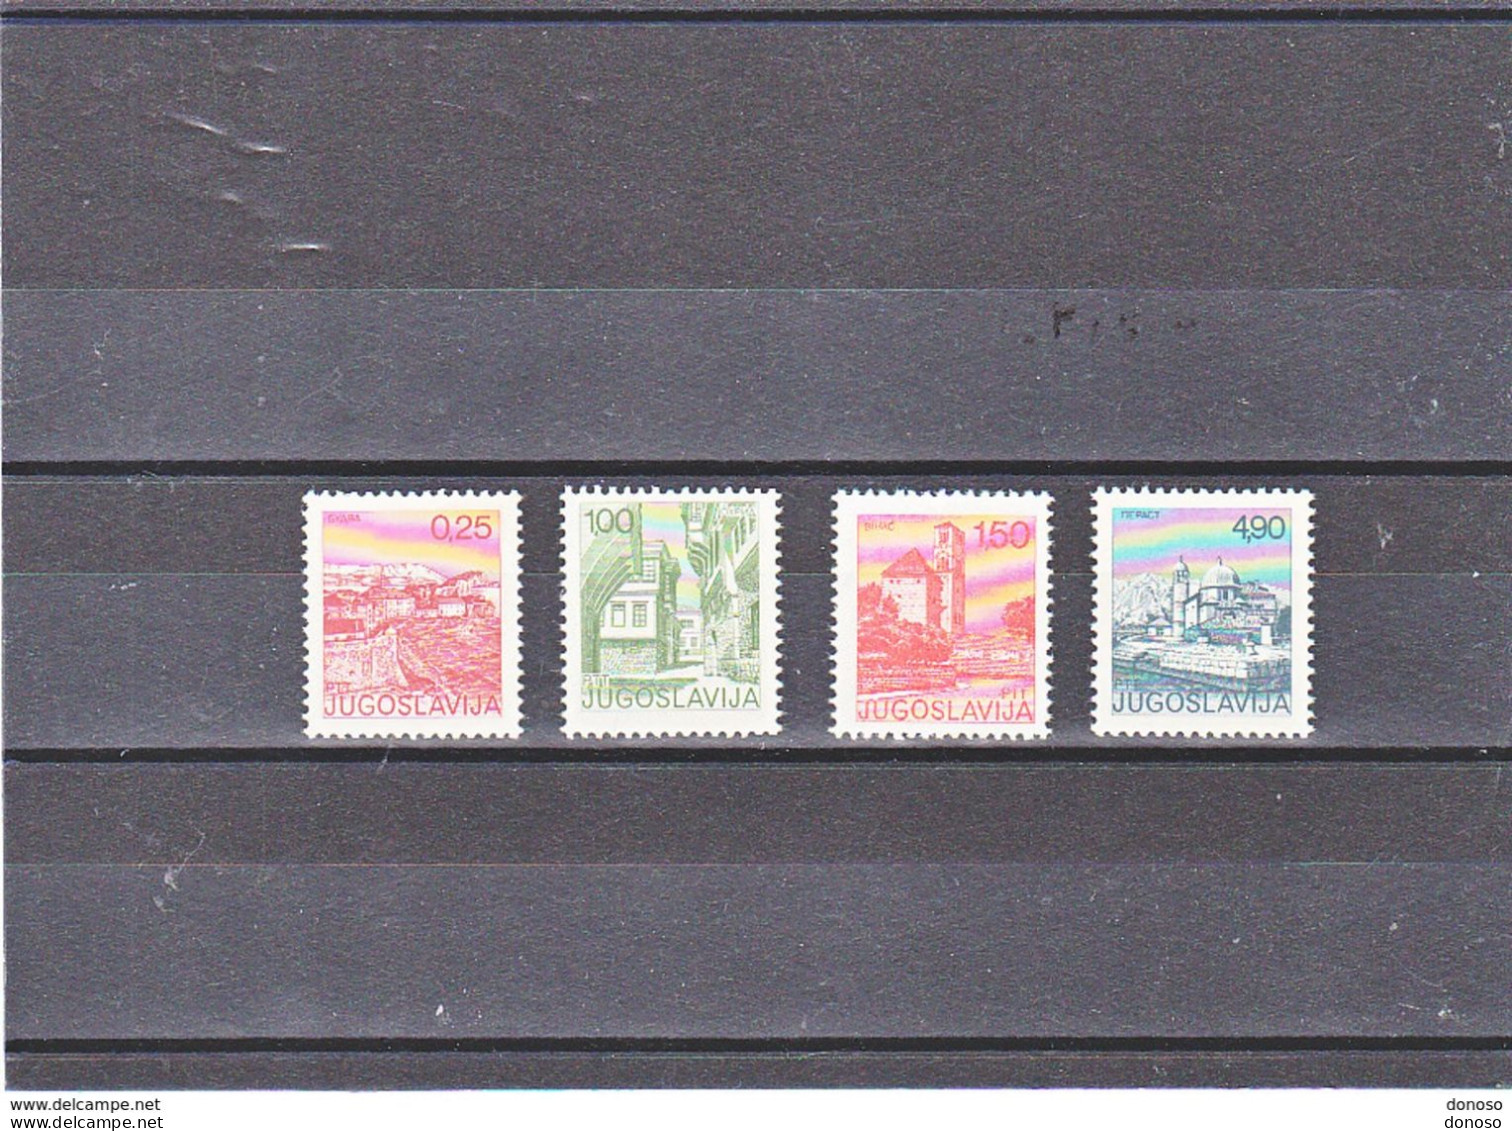 YOUGOSLAVIE 1976 TOURISME Yvert 1535-1538, Michel 1646 + 1660-1662 NEUF** MNH Cote 5 Euros - Unused Stamps